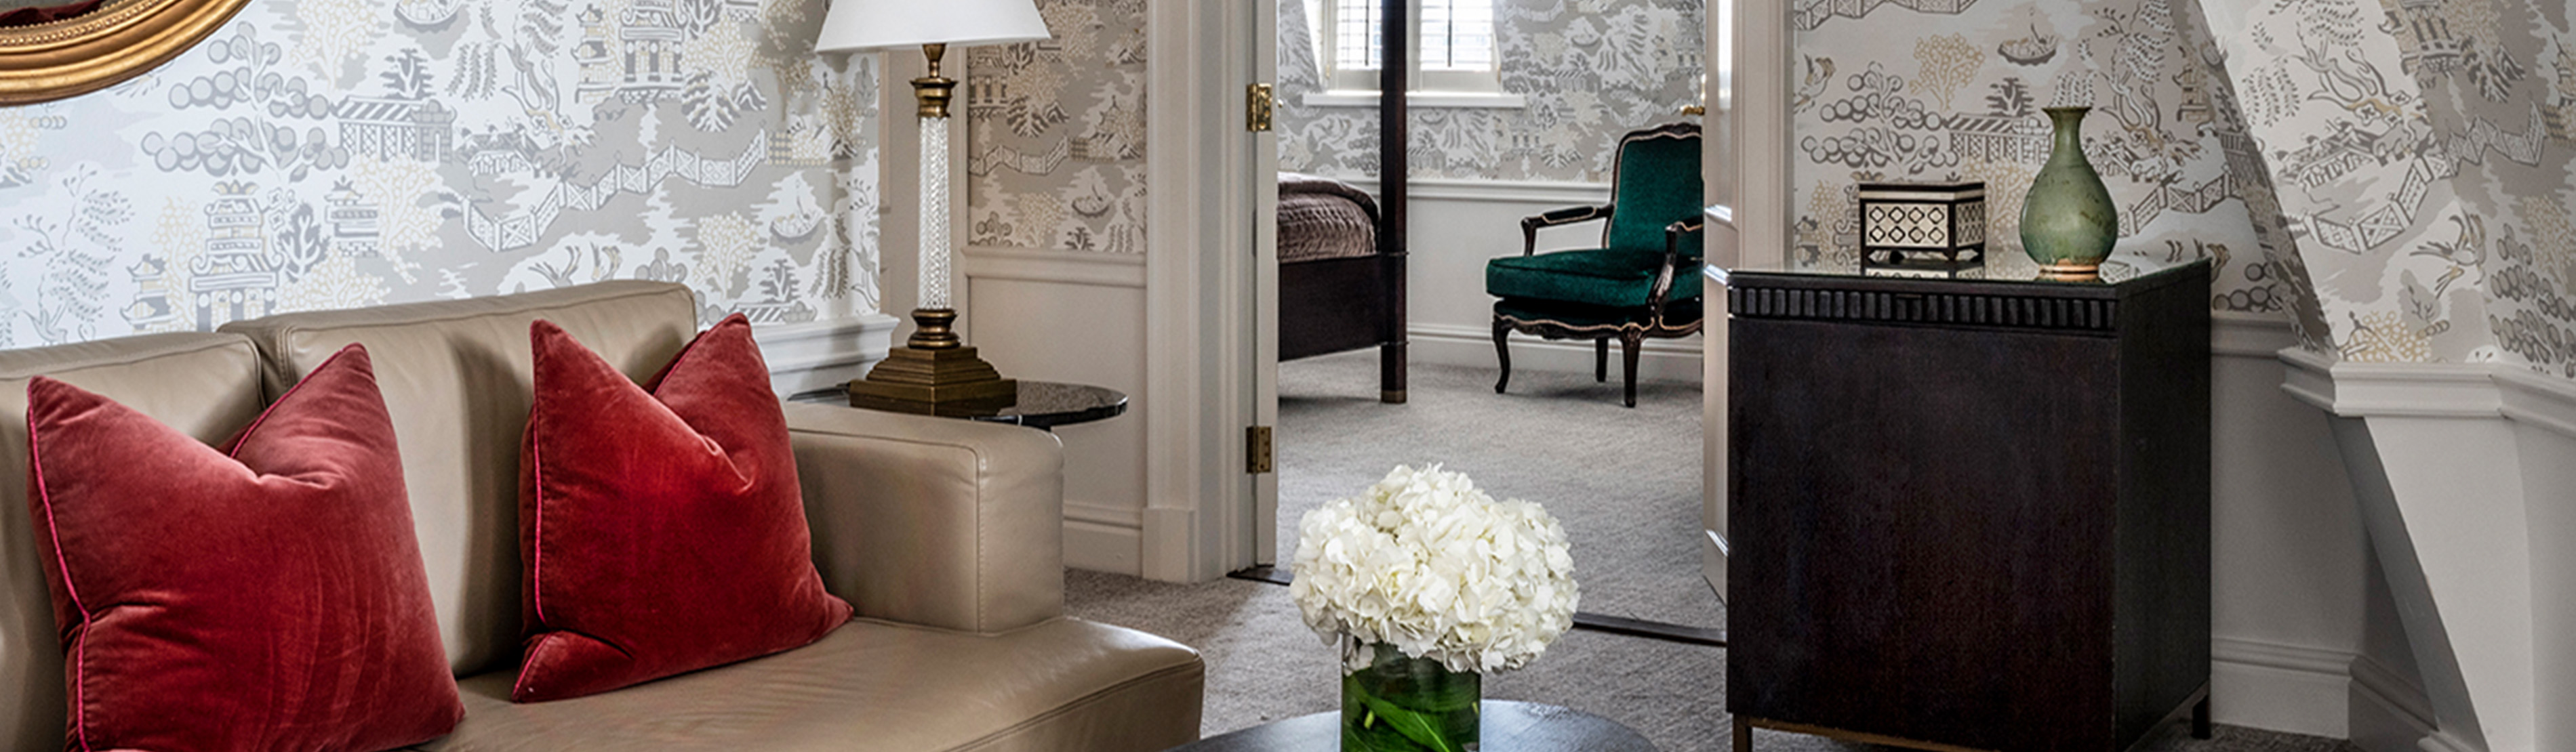 Kensington Luxury Suite Living Room 